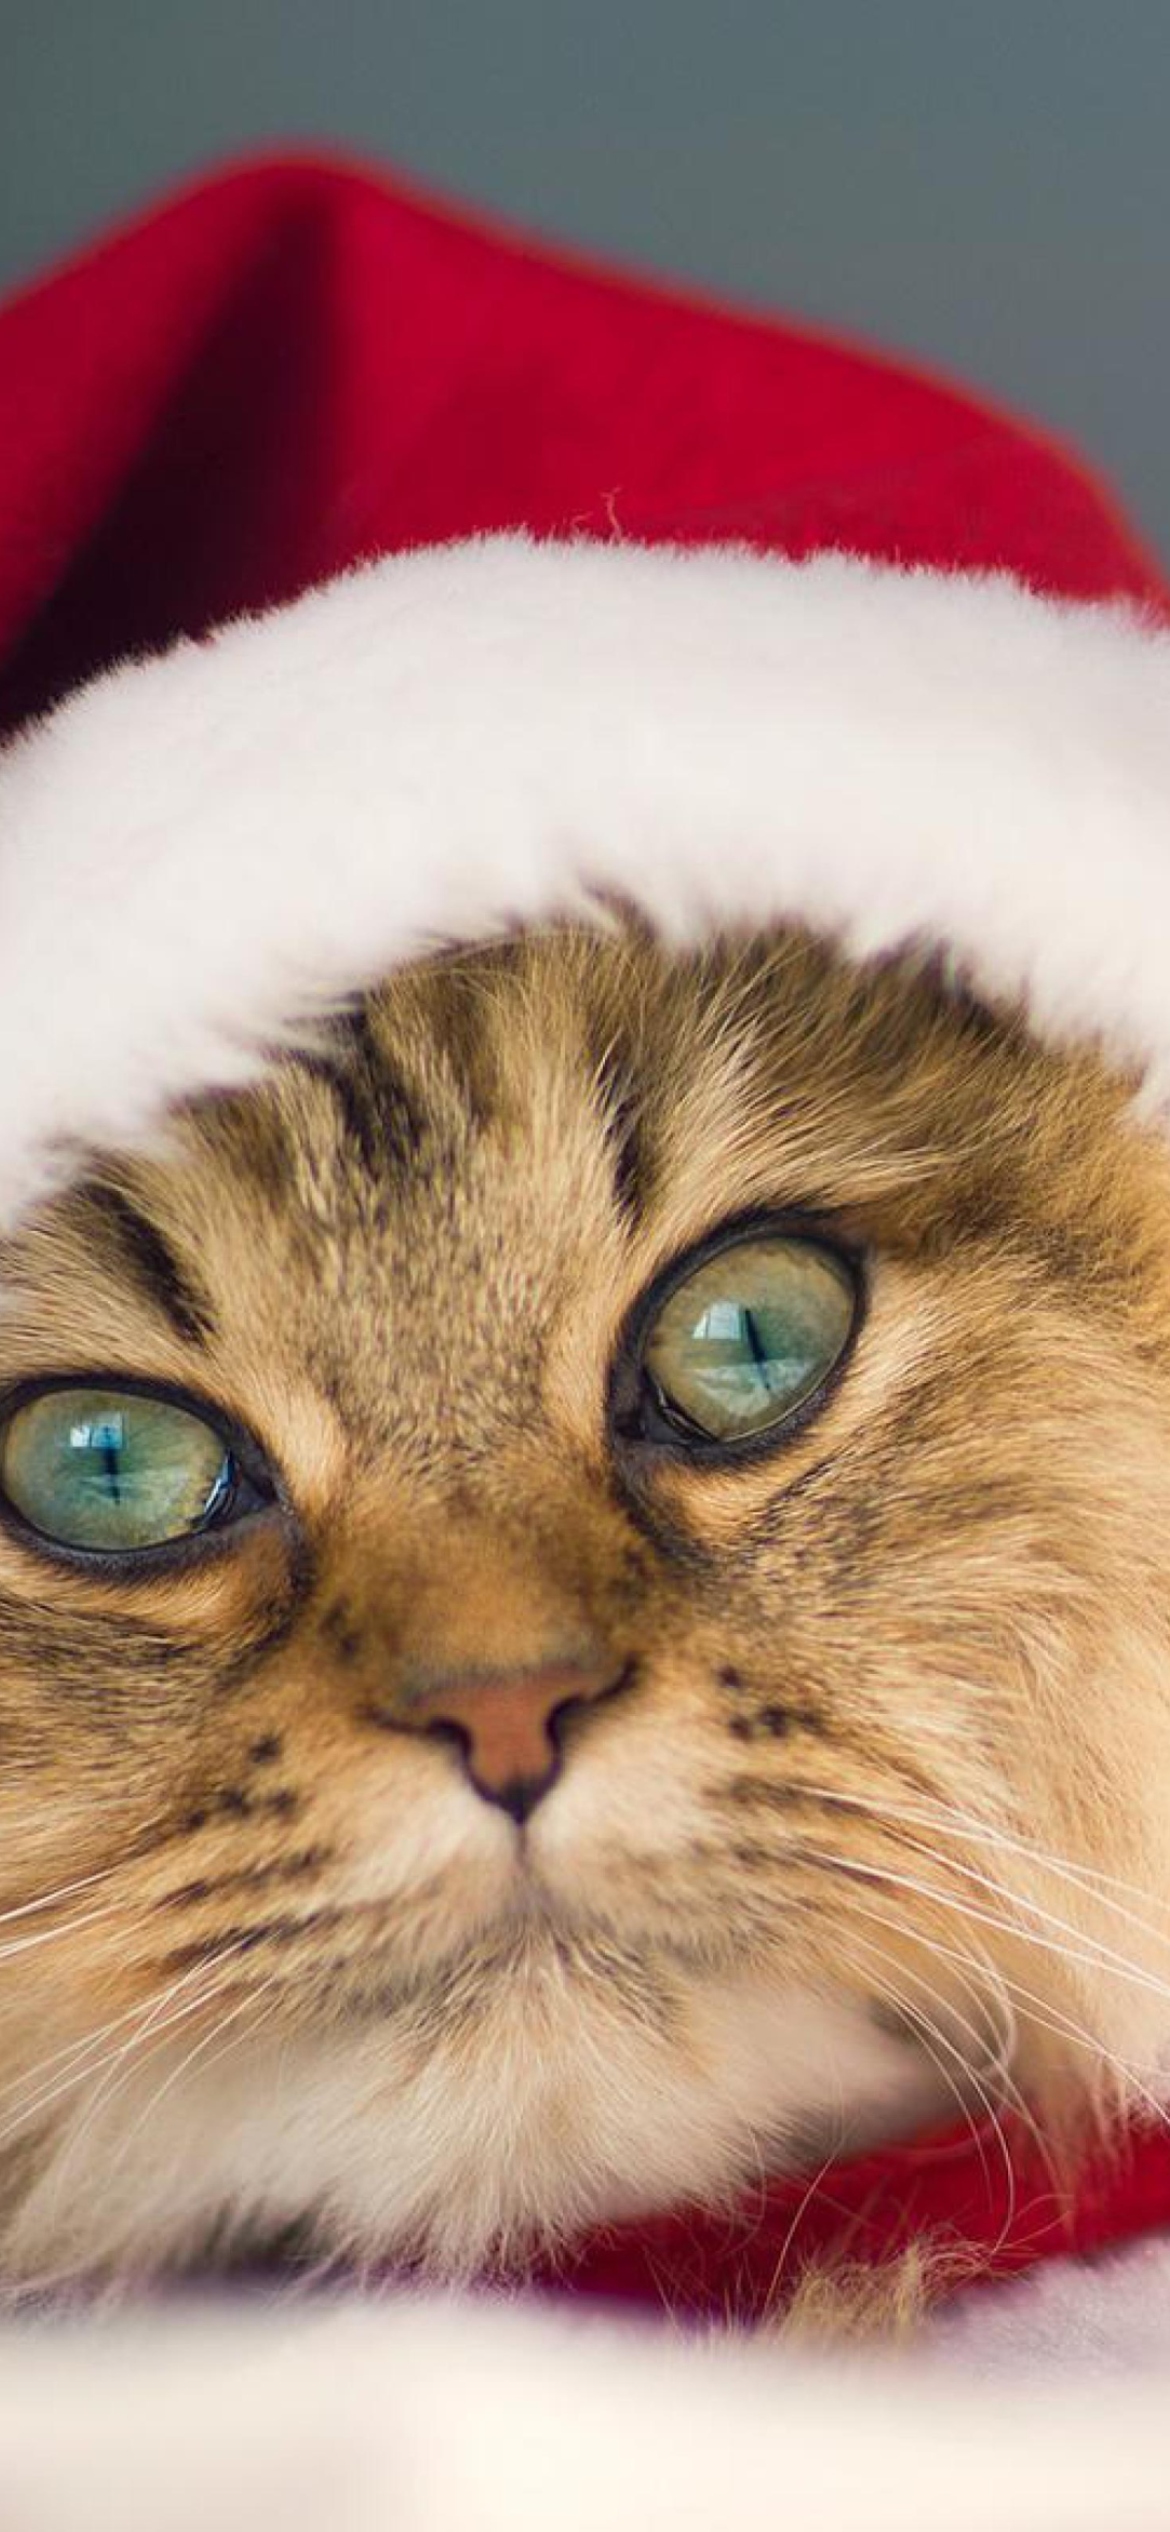 Обои Cute Christmas Cat 1170x2532